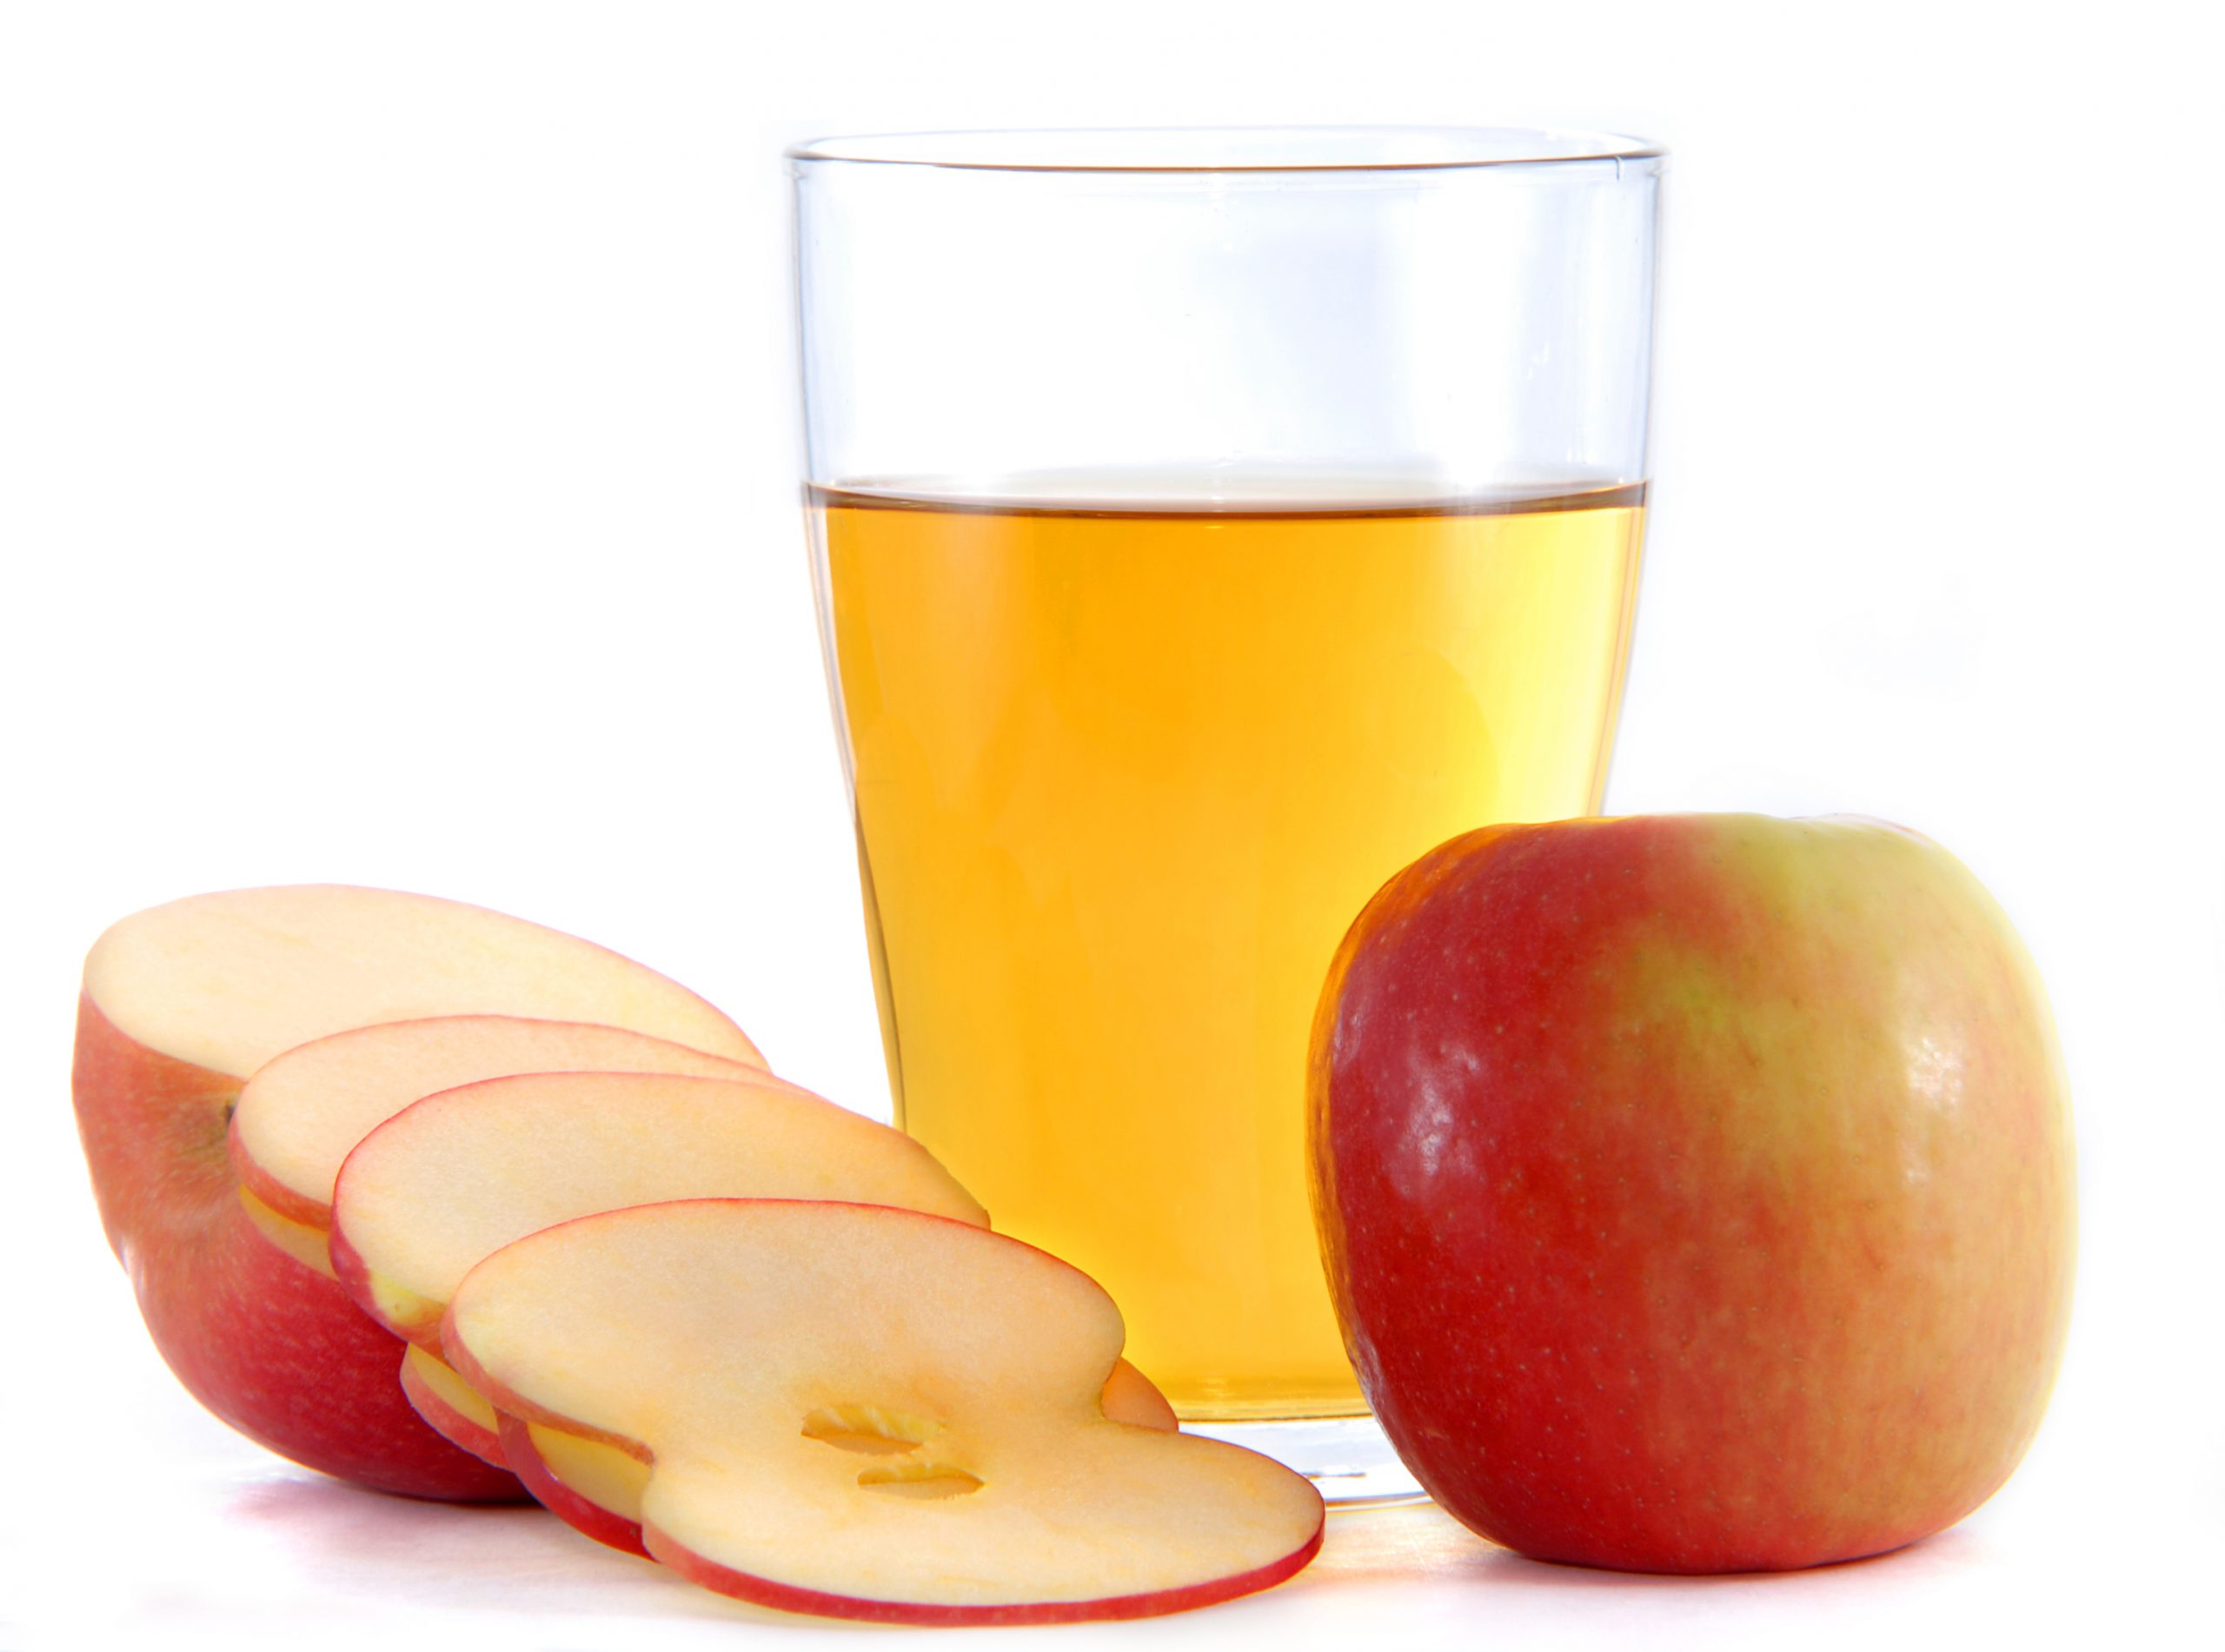 Cider vinegar reduces your blood sugar levels